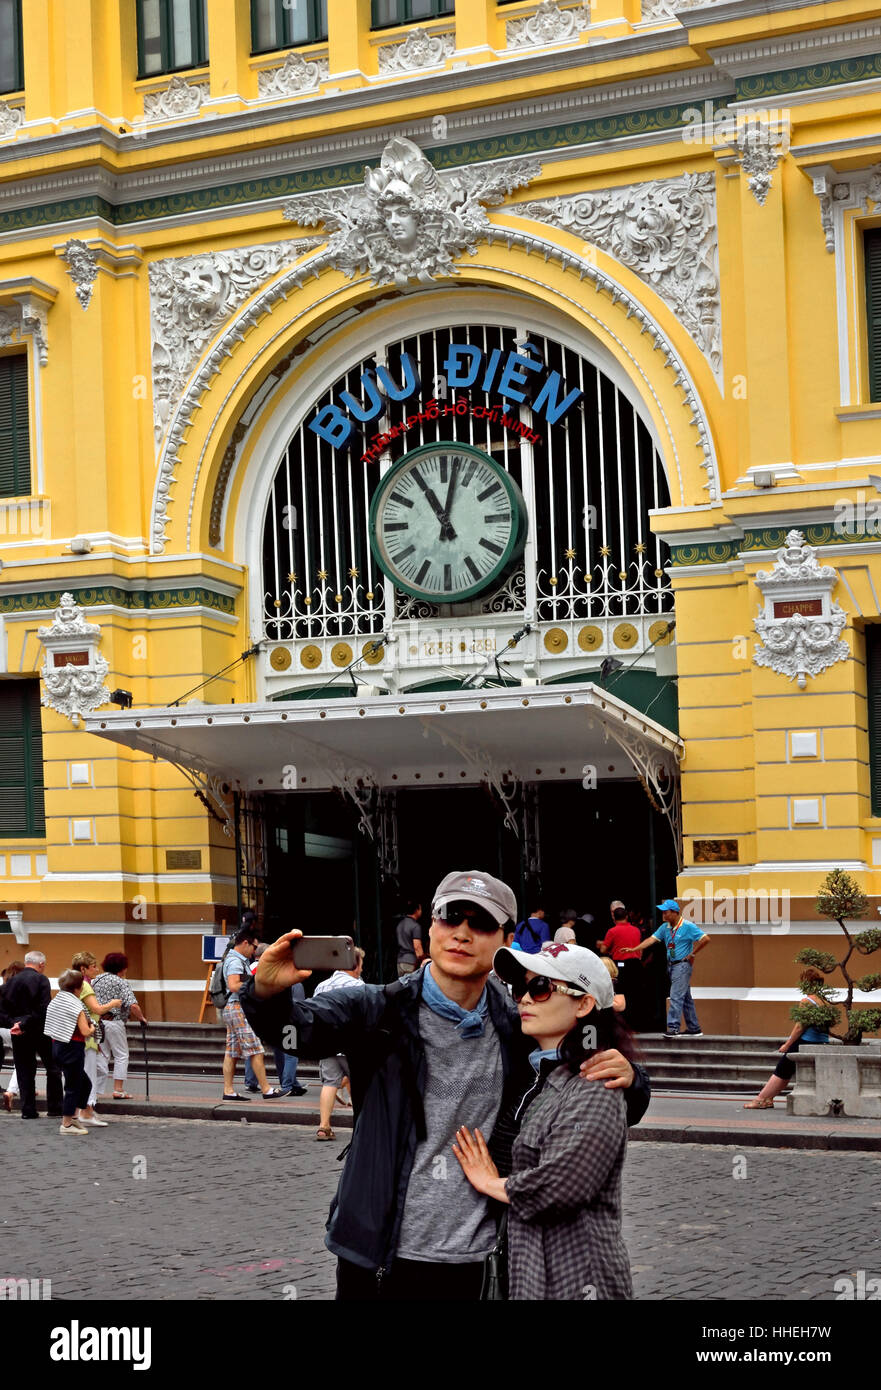 Giovani persone che amano fare un Selfie - Vecchia Stazione di Ho Chi Minh City Center (HCMC) Saigon ( vertiginosa, alto ottano, città di scambi, commercio e cultura) Repubblica socialista del Vietnam Foto Stock